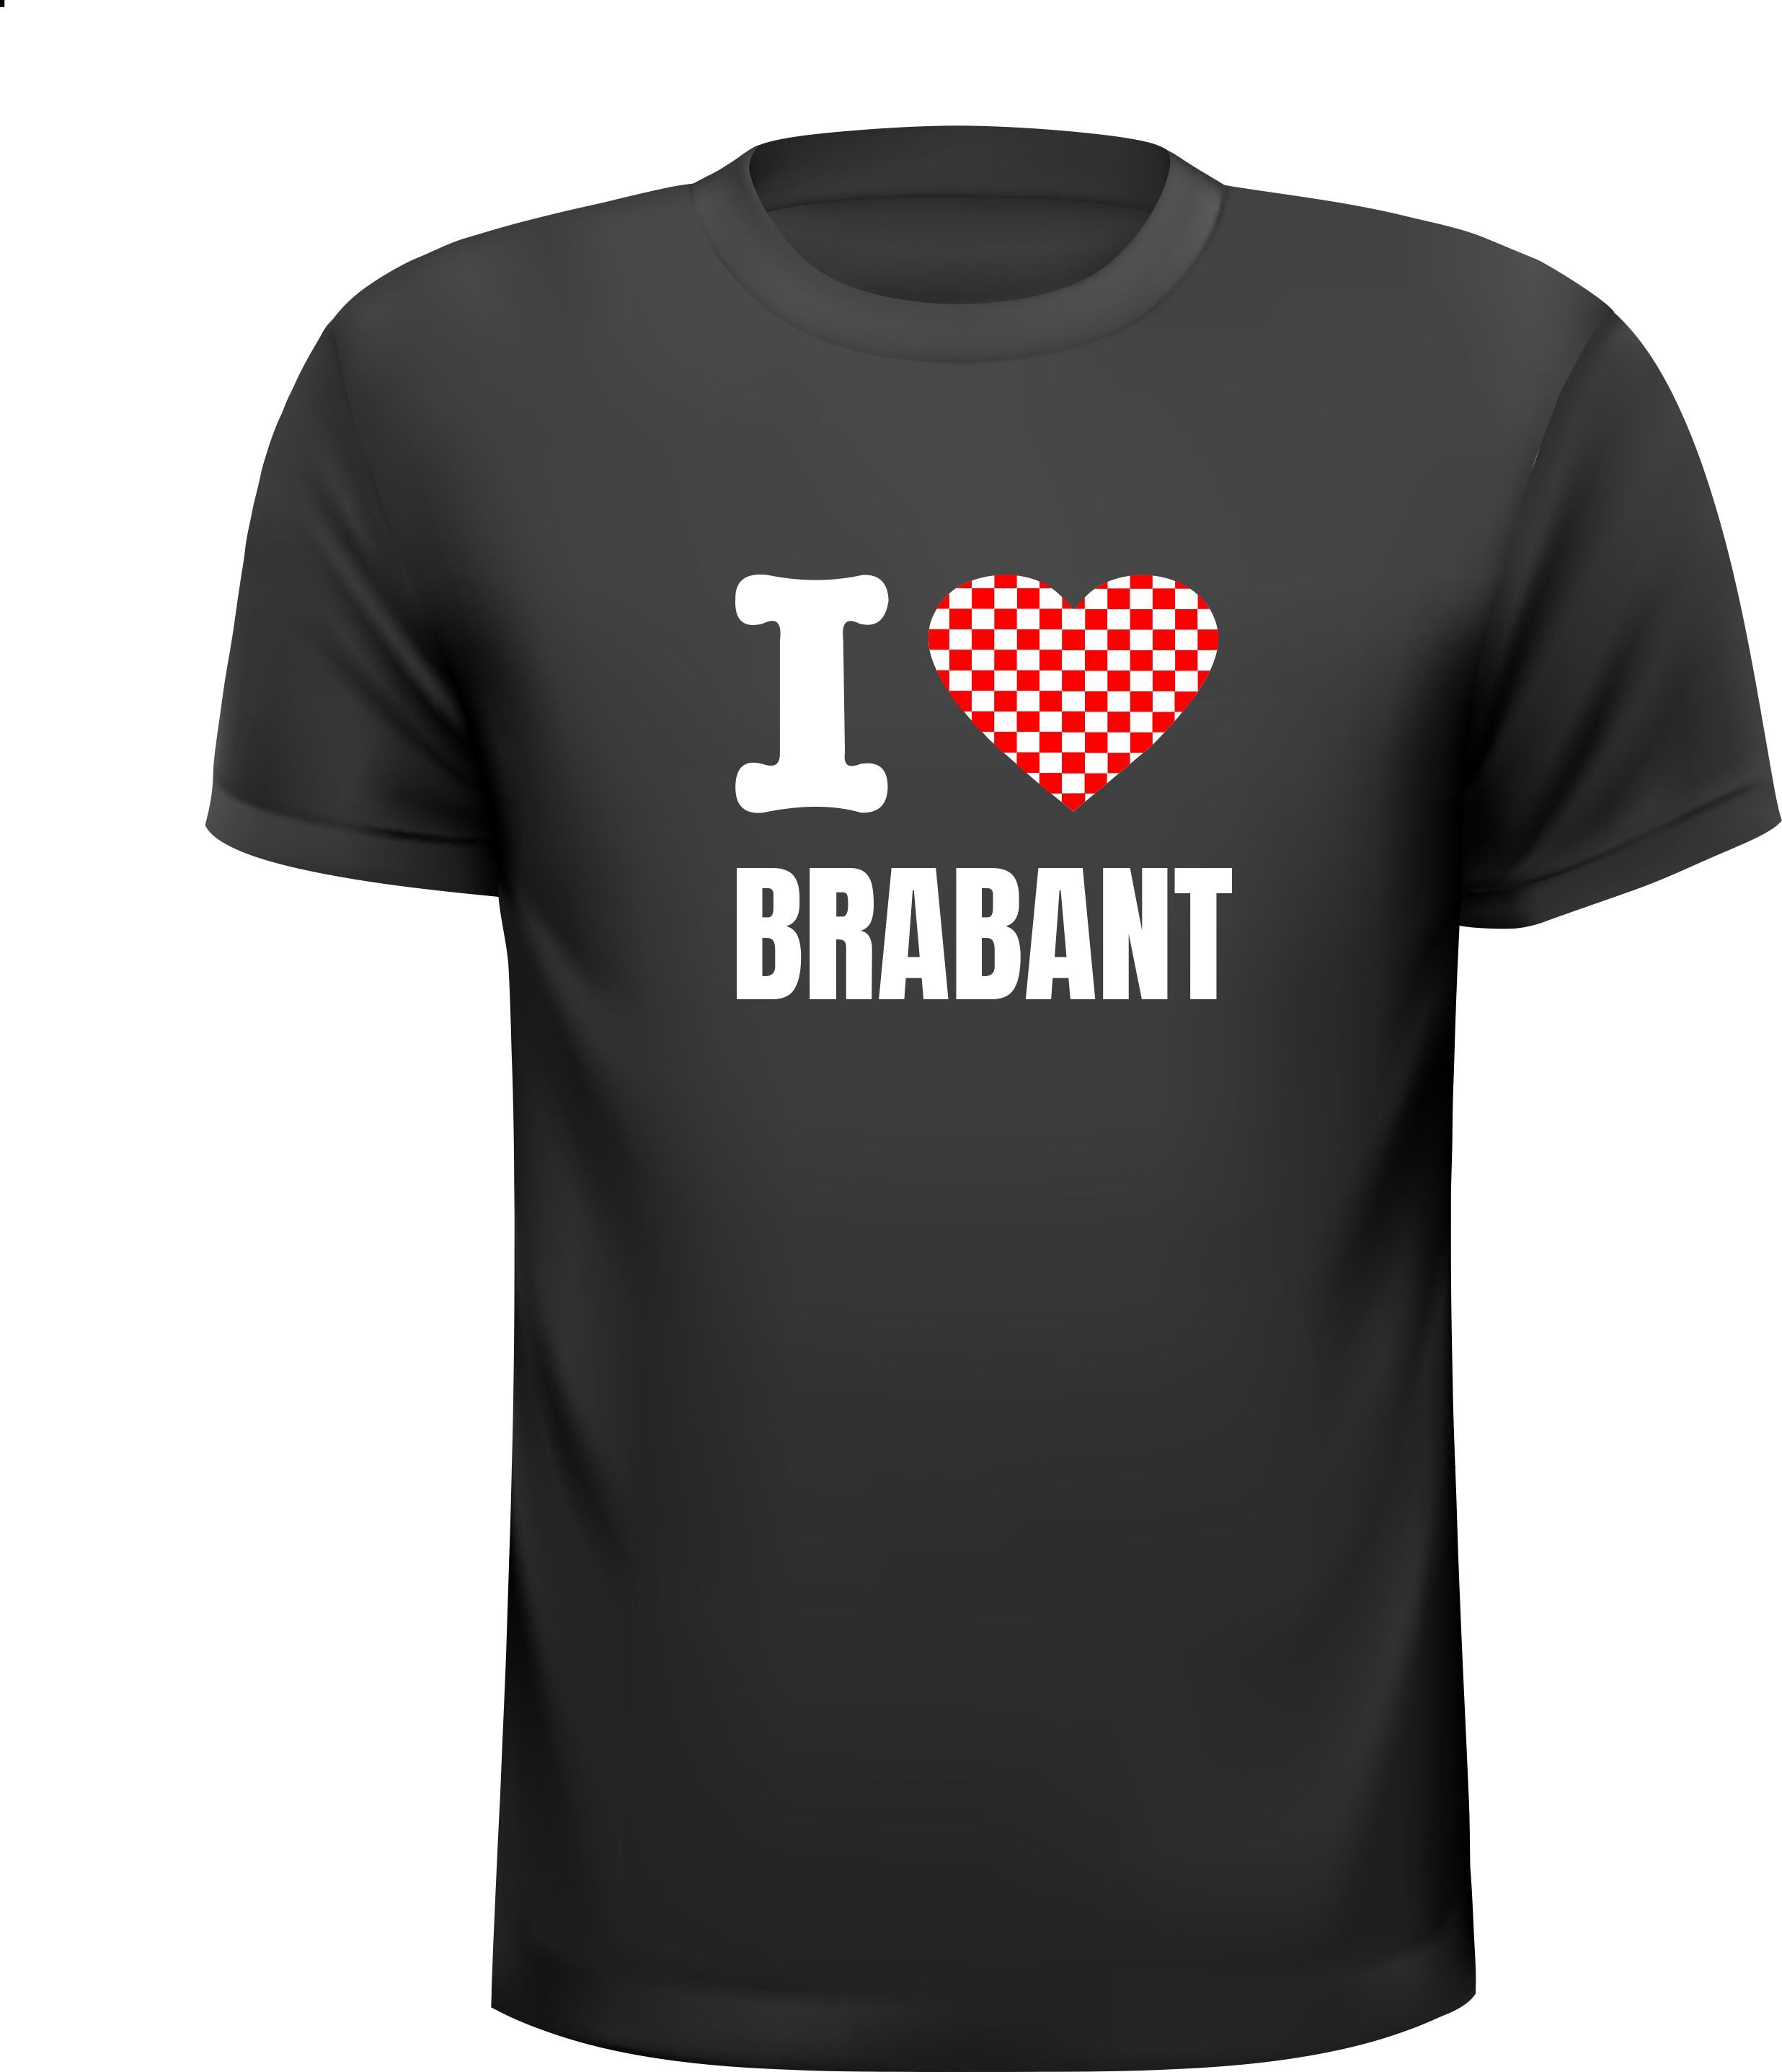 T-shirt i love Brabant geblokt hart Voor een echte Brabander